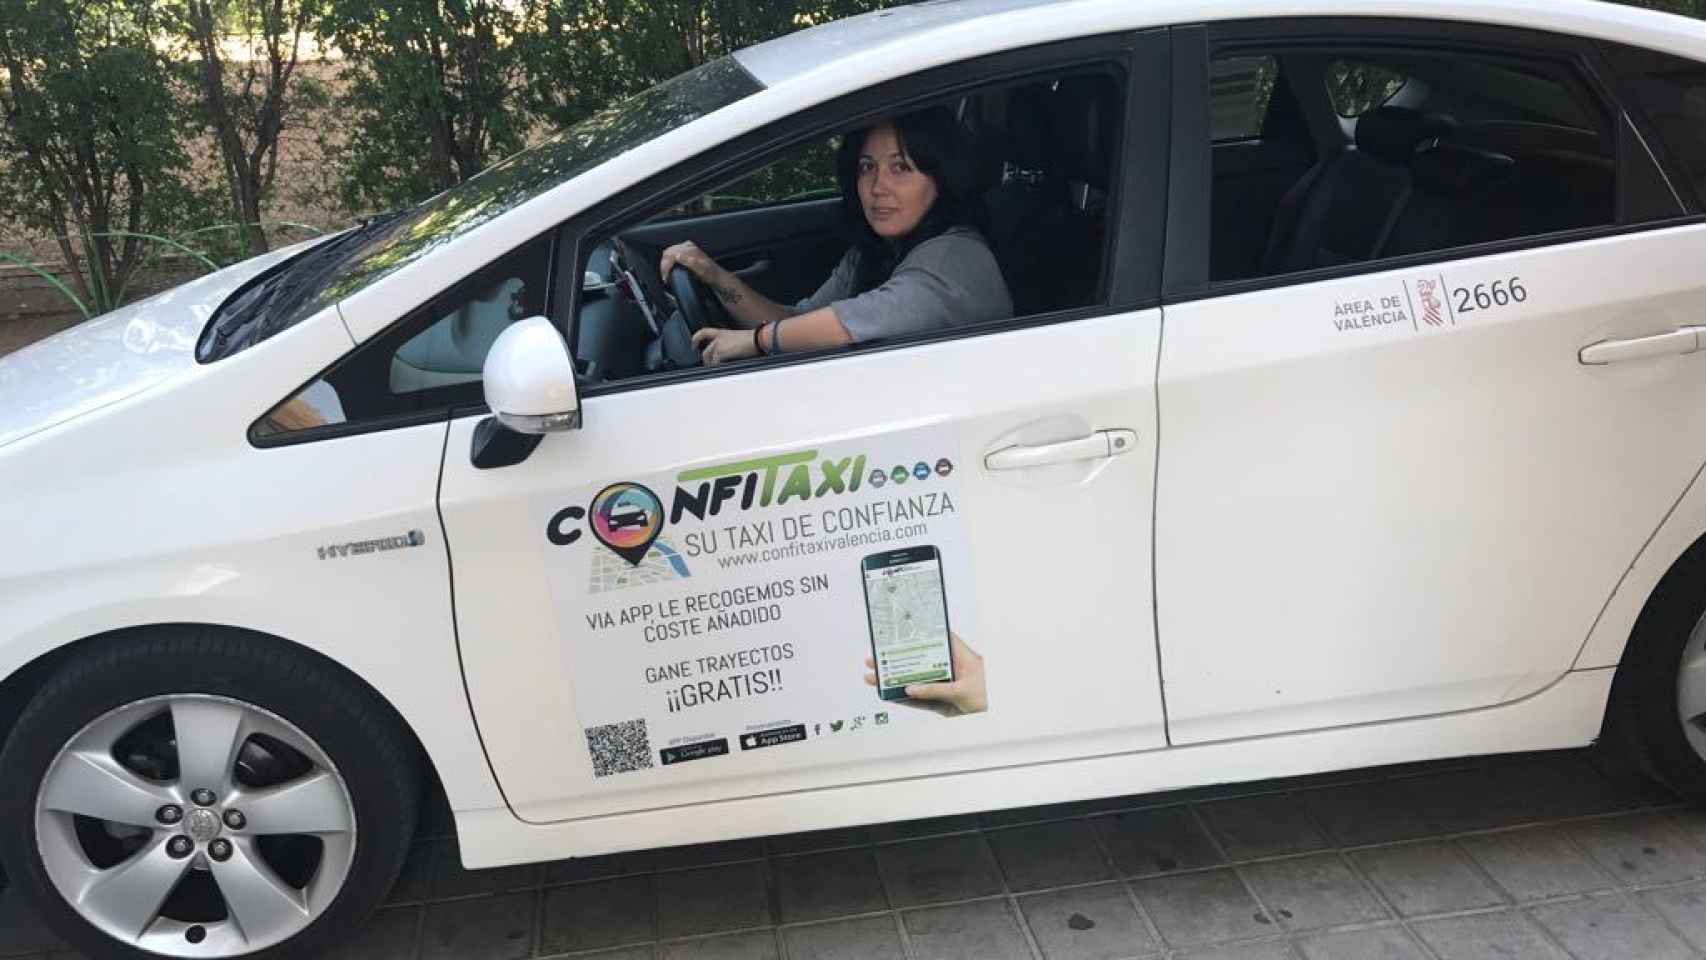 Sonia López es taxista y gestora de la flota de Confitaxi. Esta emisora presta el servicio Taxi Dona: taxis conducidos por mujeres y para mujeres.